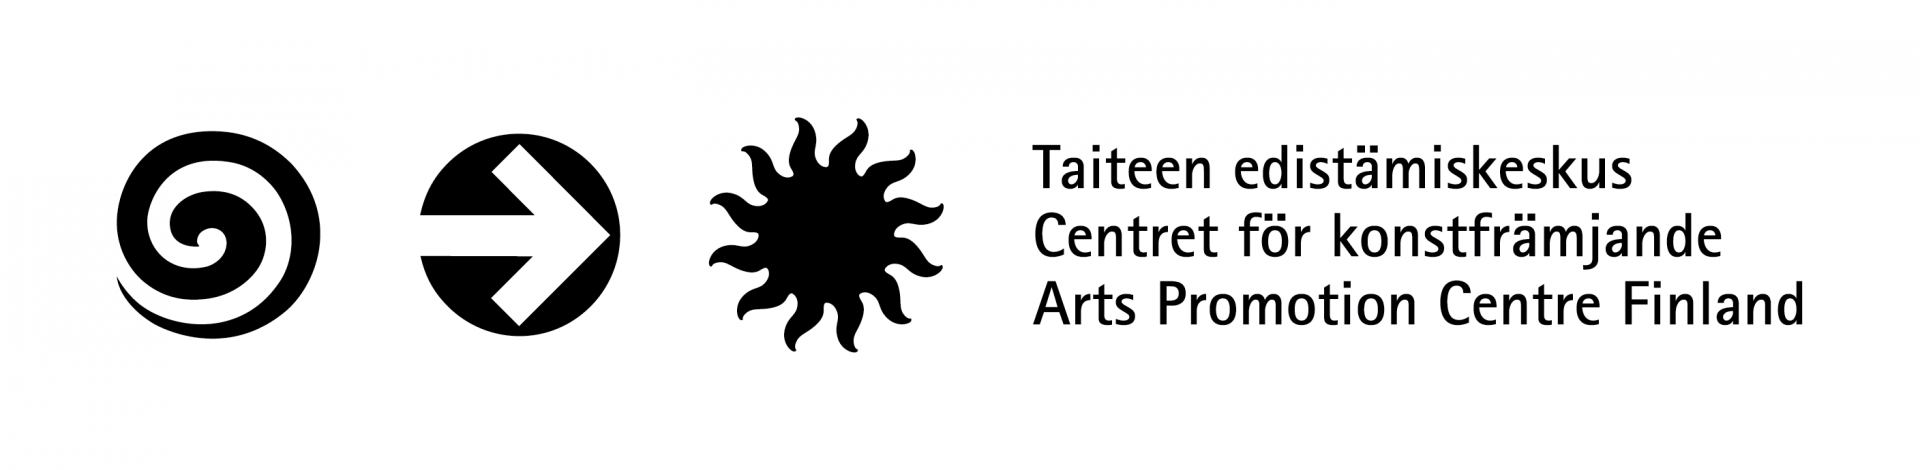 Taiteen edistämiskeskuksen logo. Logon vasemmalla puolella on kolme ympyränmuotoista symbolia; kierre, nuoli joka osoittaa oikealle sekä musta aurinko. Symbolien jälkeen on keskuksen nimi kolmella kielellä toistensa alla: Taiteen edistämiskeskus, Centret för konstfrämjande ja Arts Promotion Centre Finland.